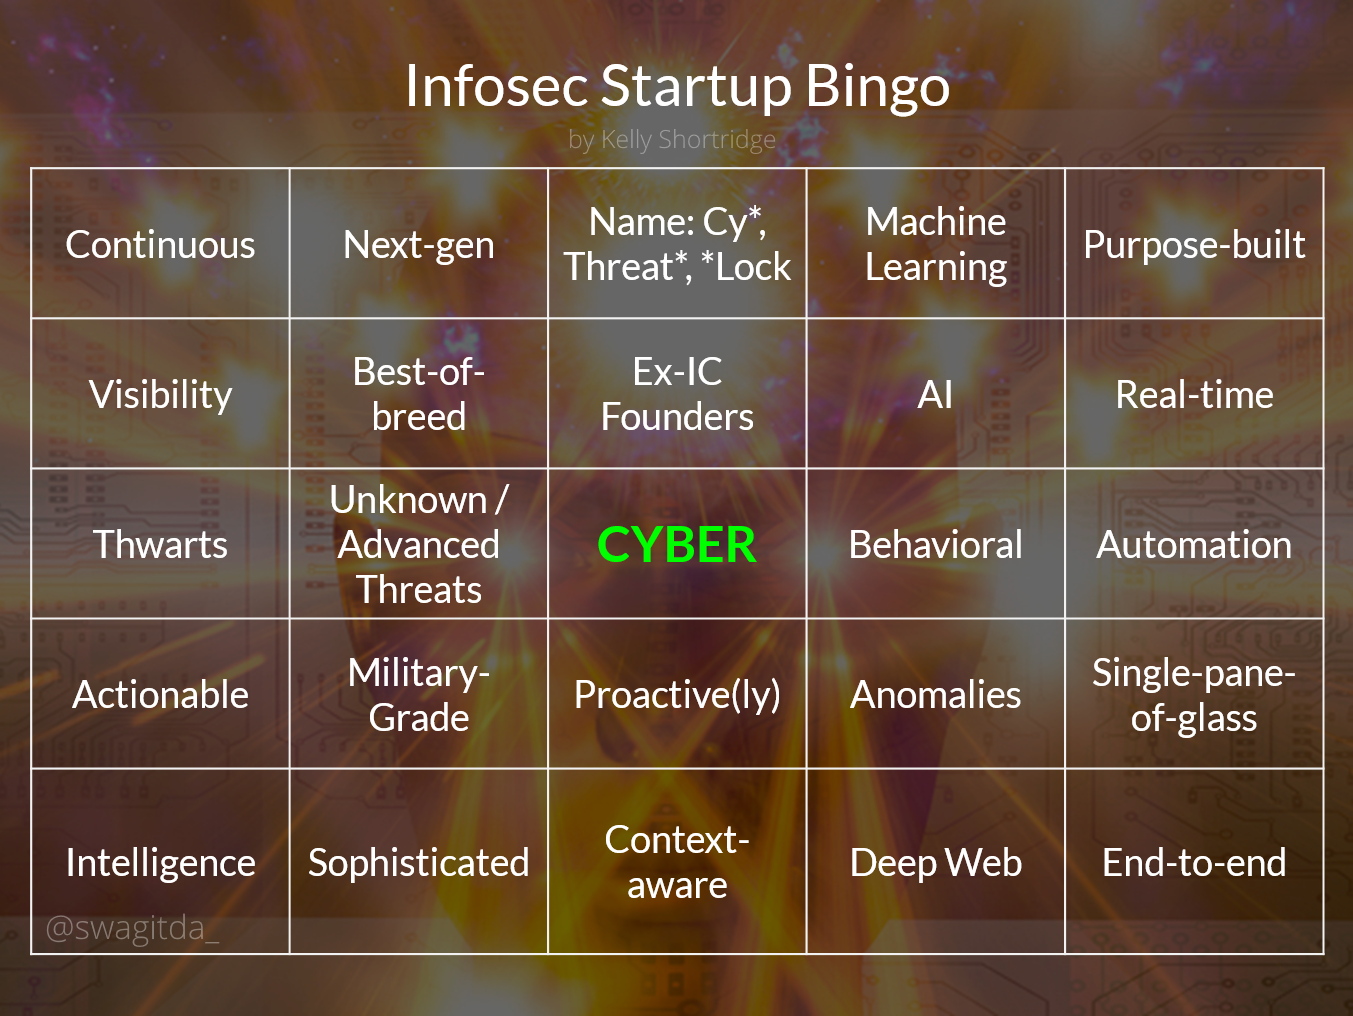 Infosec Startup Buzzword Bingo card for 2017